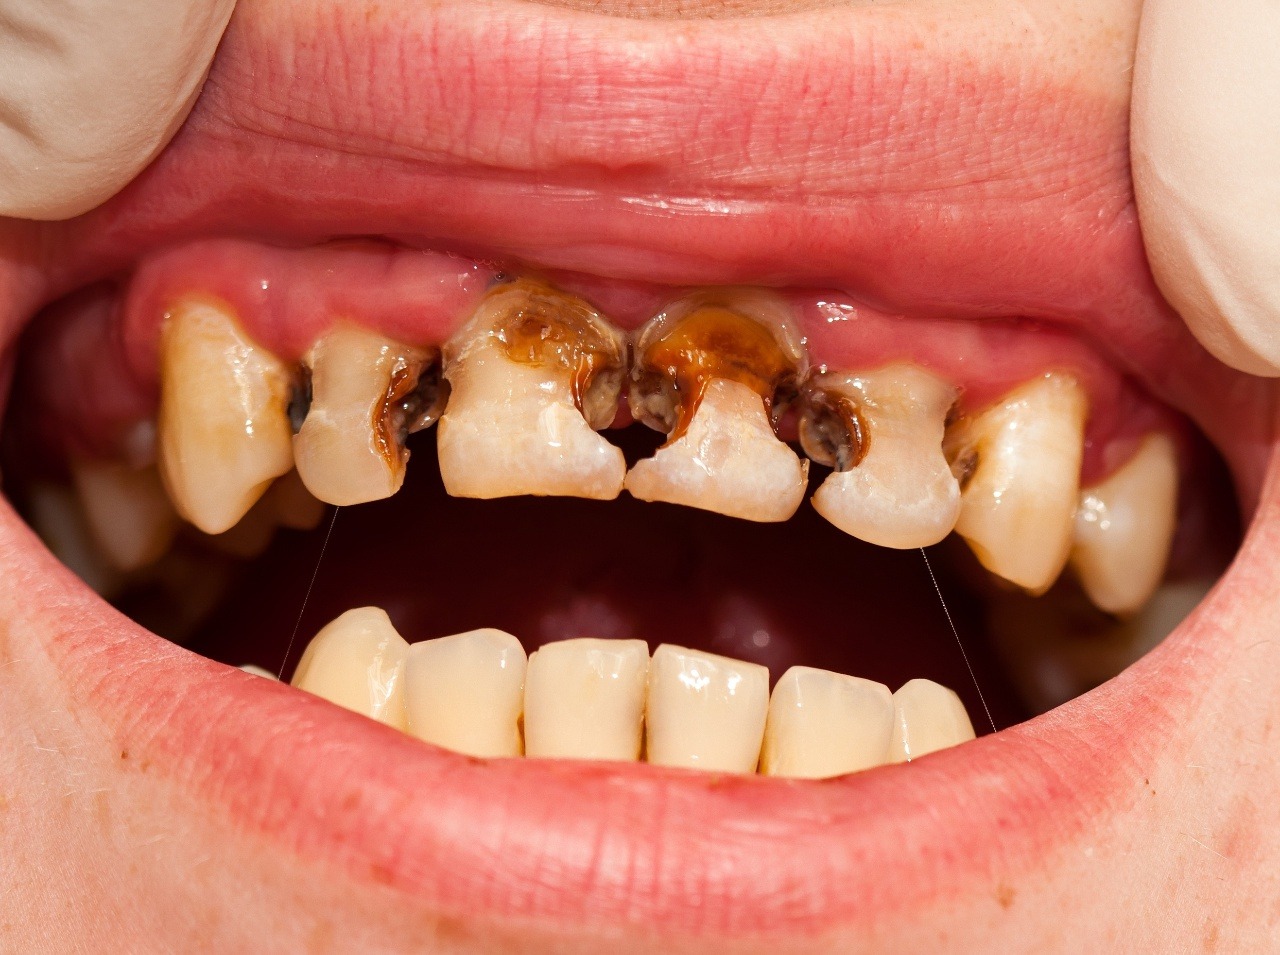 Ak máte problémy so zubami, nevynechajte návštevu zubára!